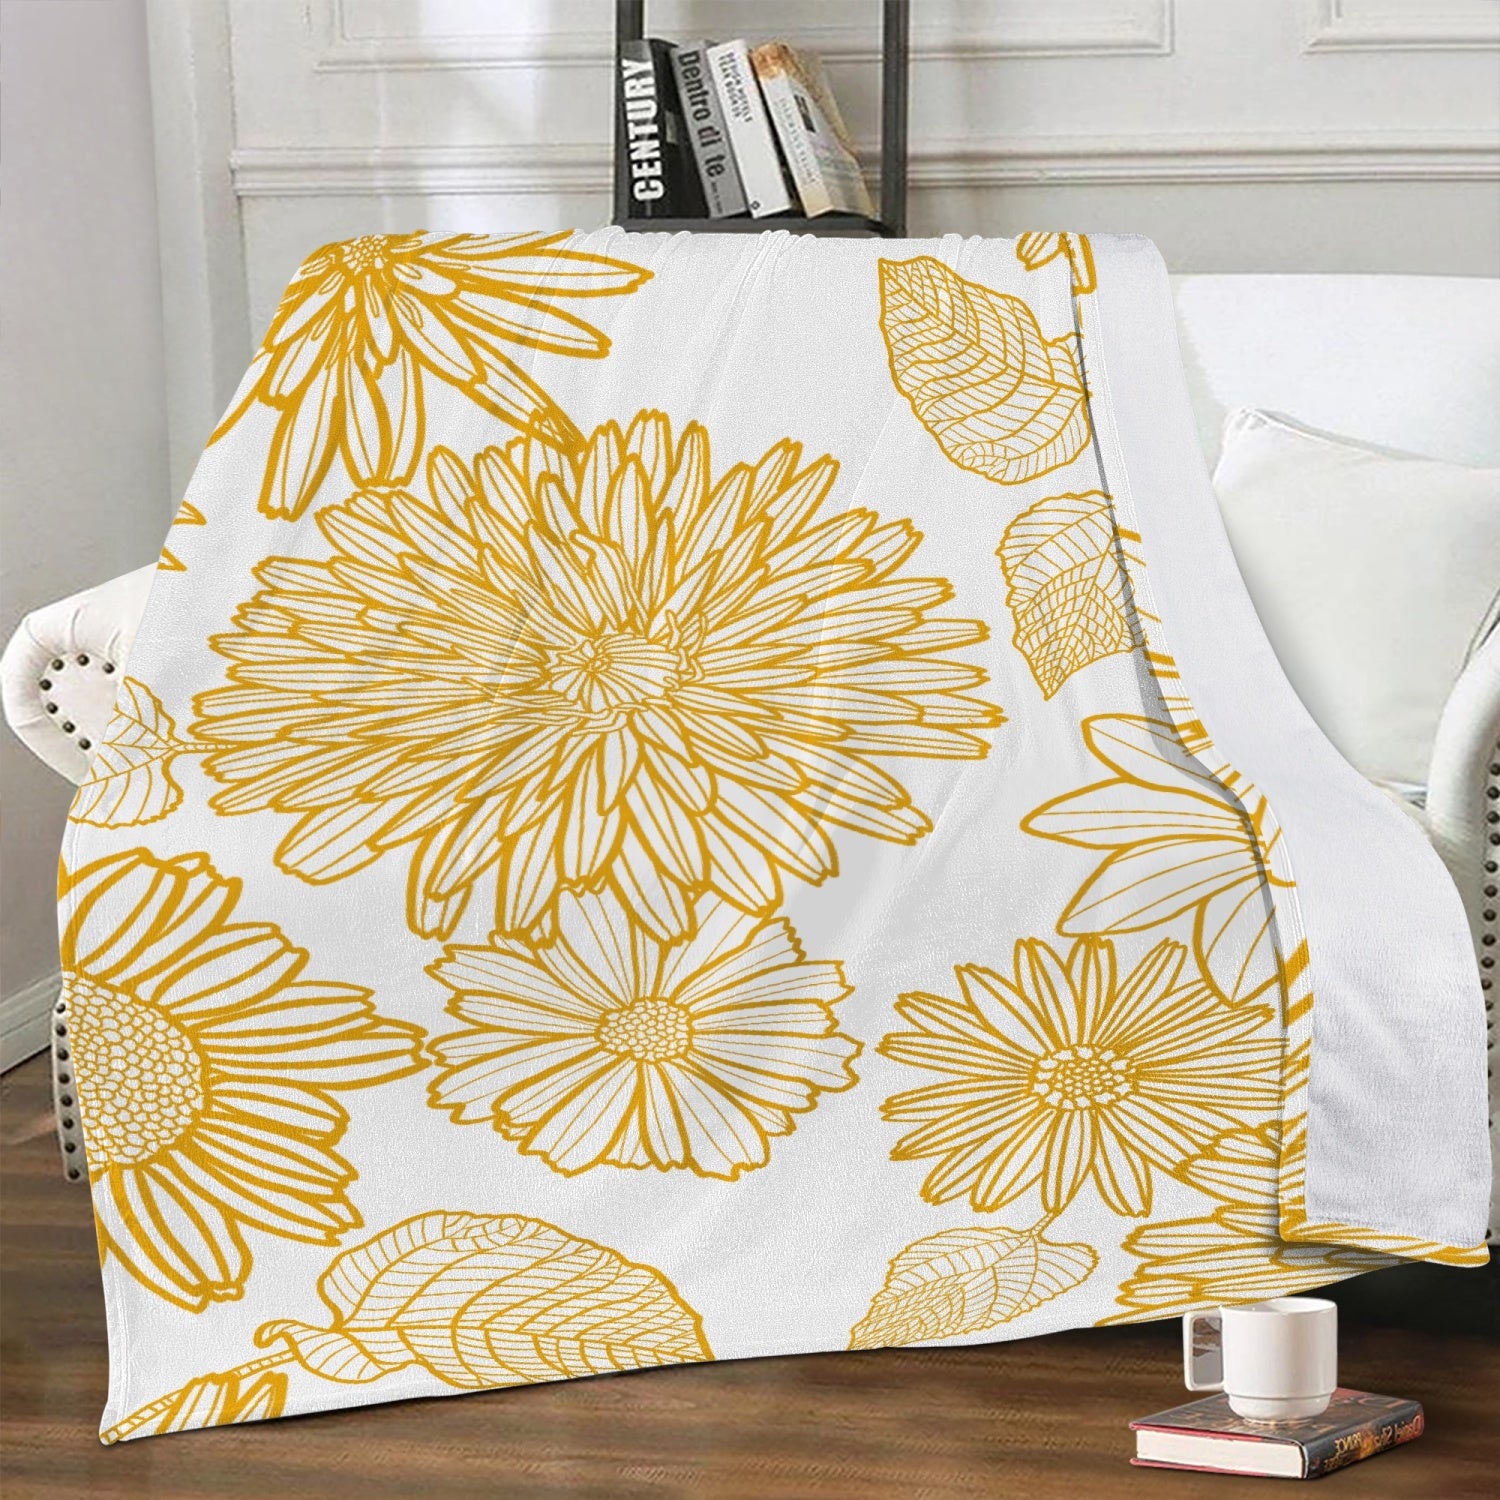 yellow sunflower fleece blanket for spring or summer decor